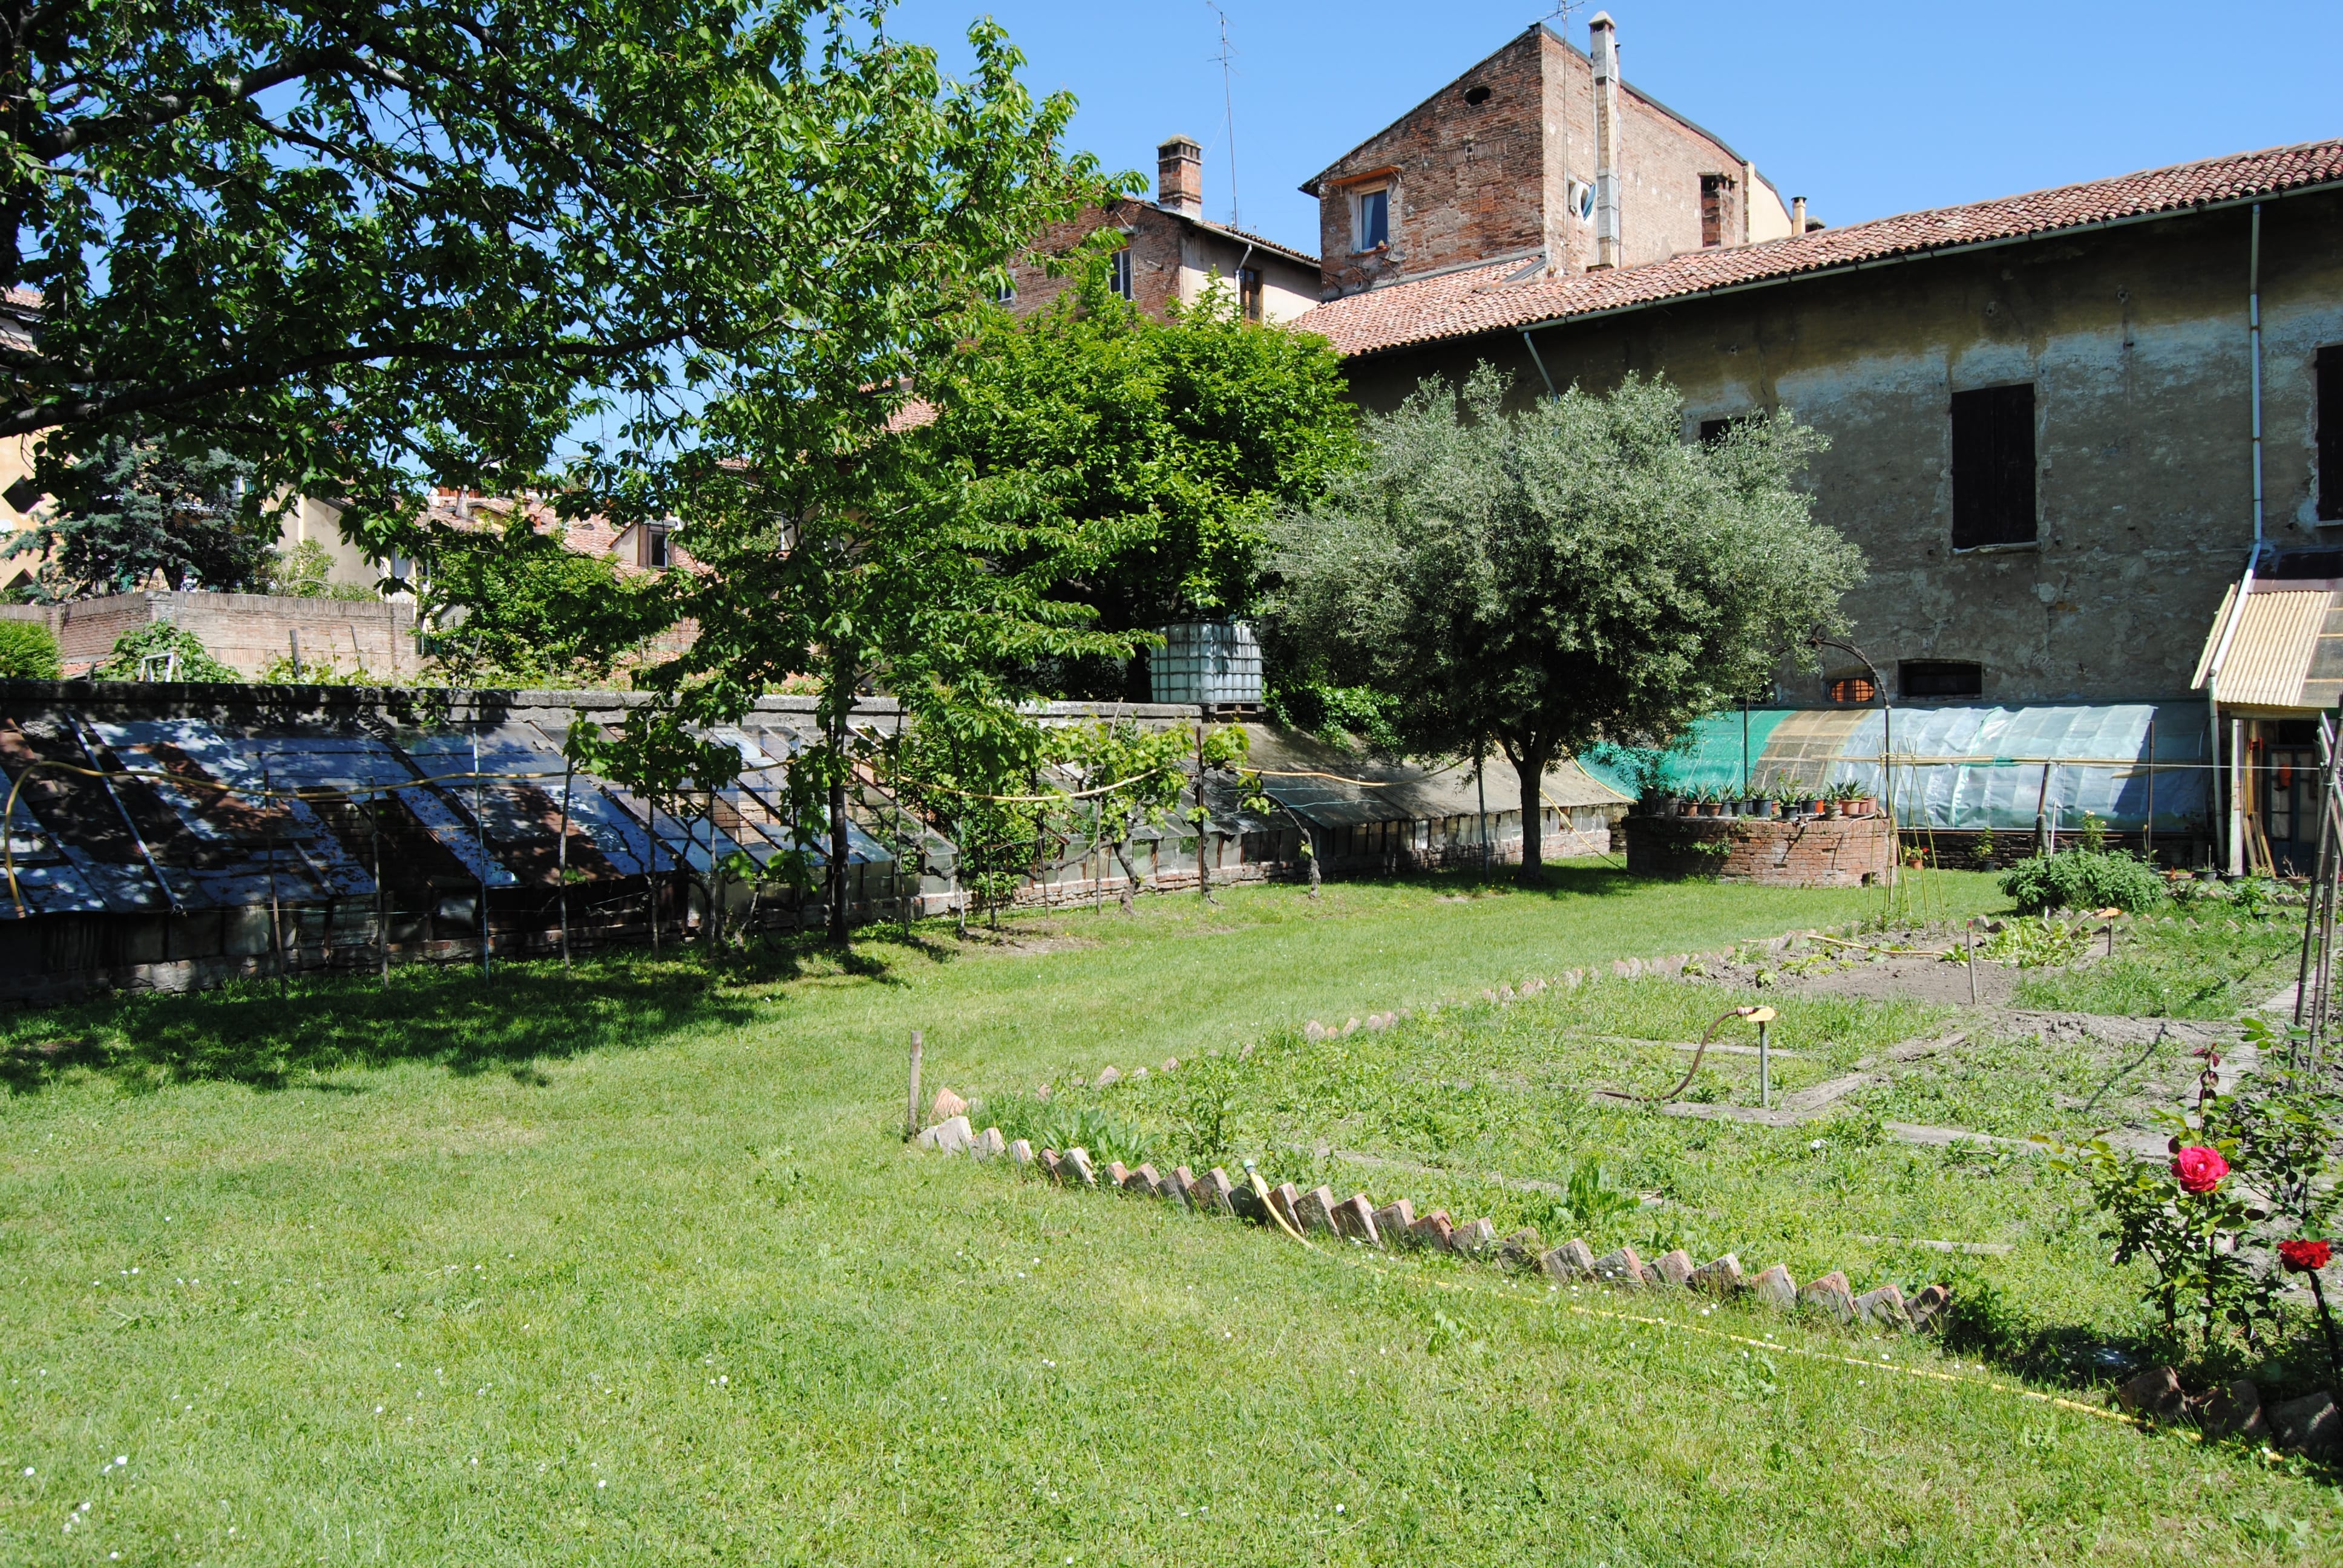 Bologna, città dei giardini: a raccolta i maggiori esperti di verde urbano 